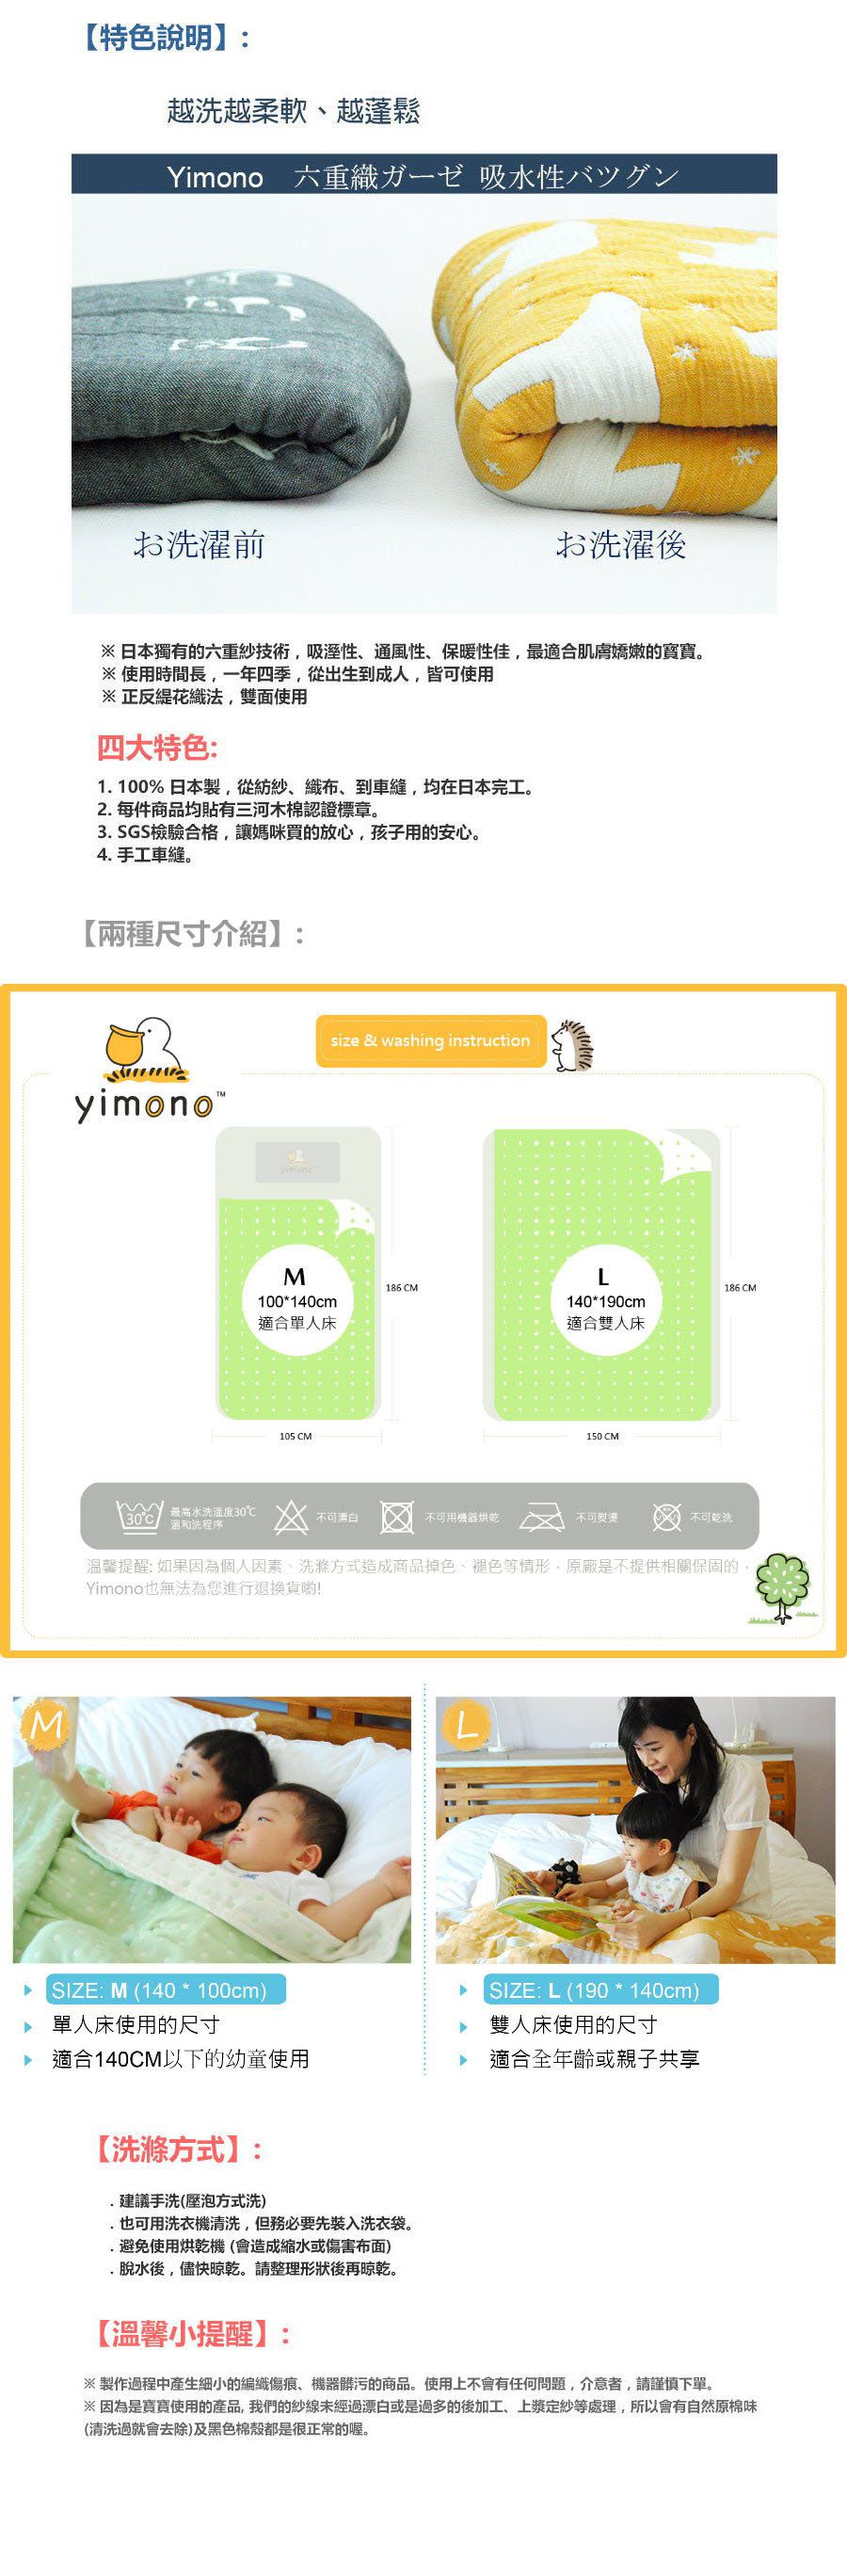 日本製YIMONO六層紗呼吸被 (黃色貓頭鷹)- L-190cmx140cm